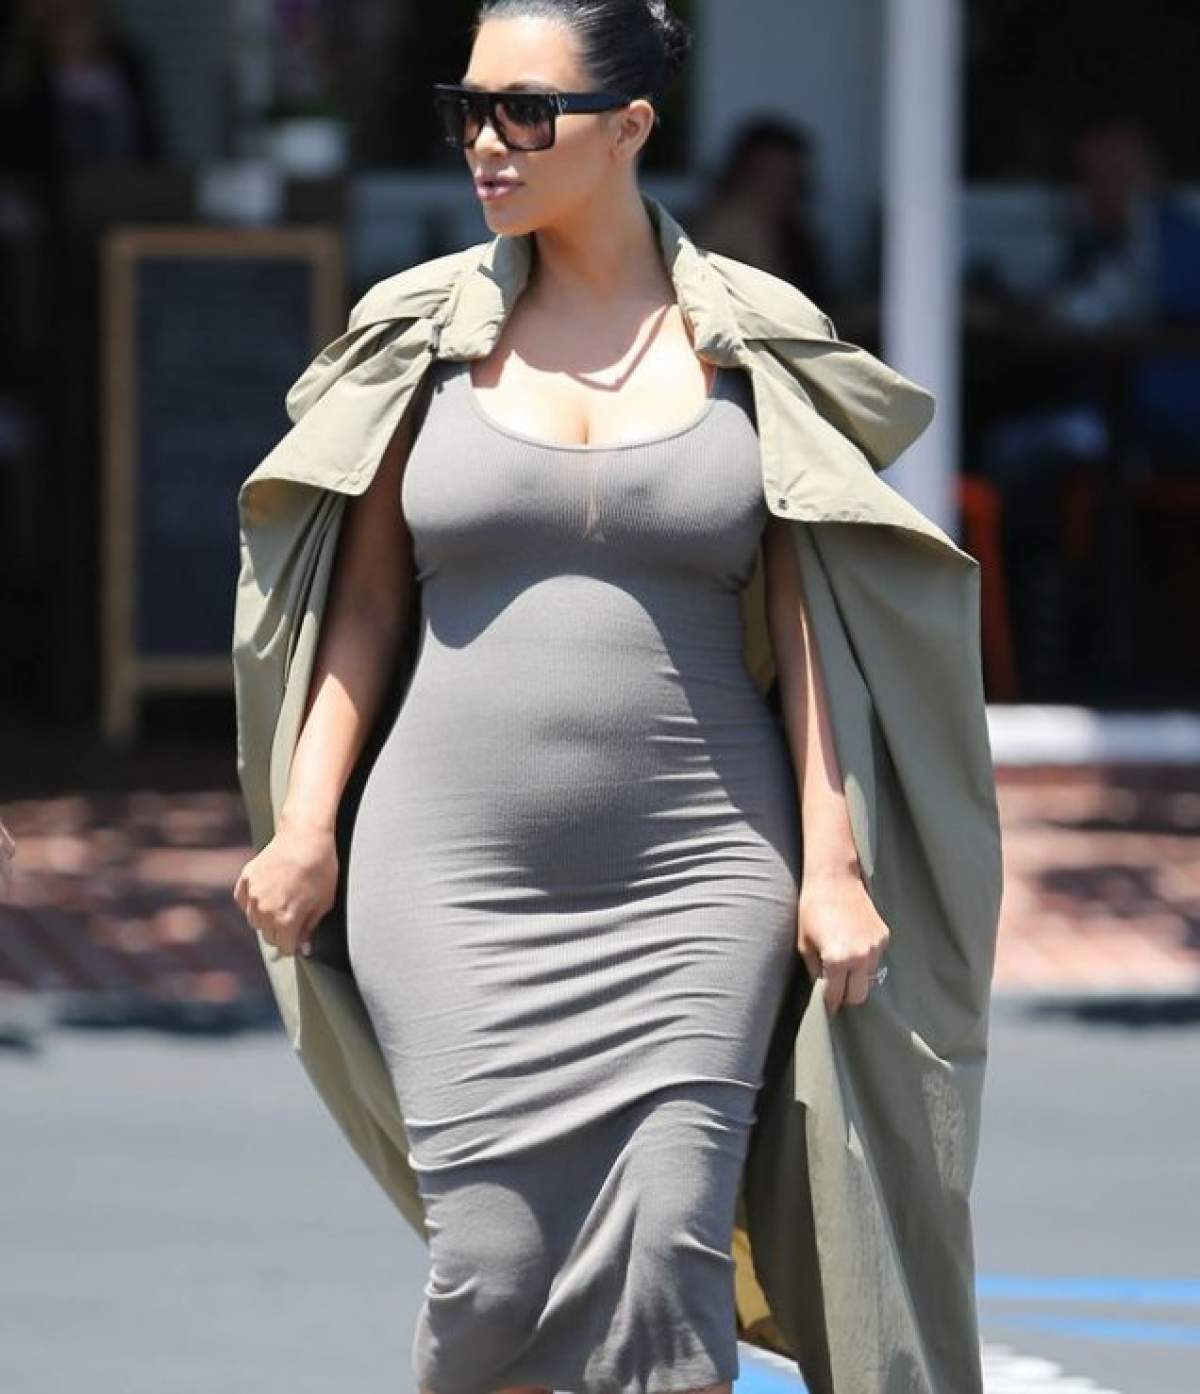 Are burta până la gură, dar s-a pozat GOALĂ! Kim Kardashian, cu "dotările" la vedere pe internet